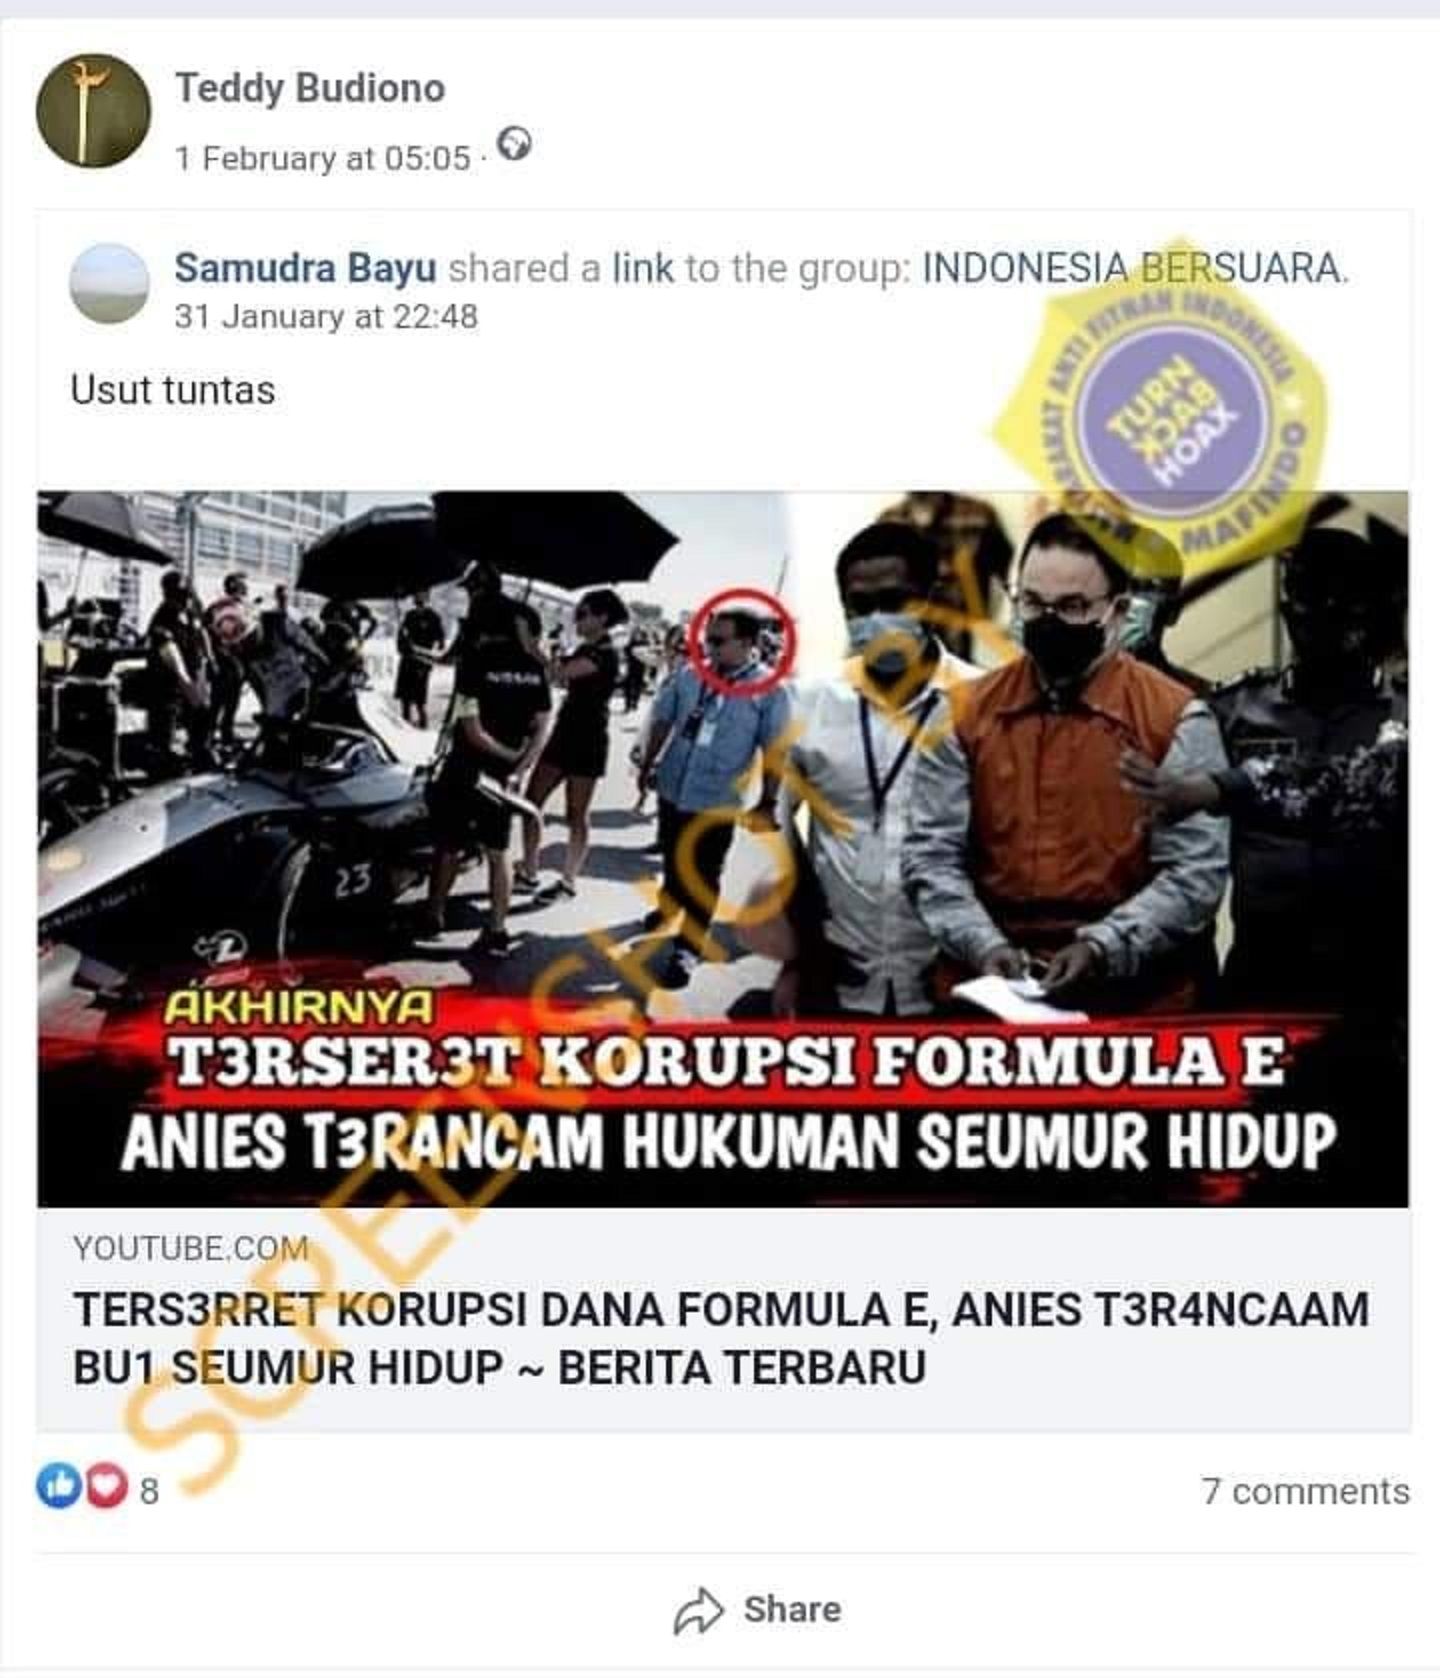 Gambar tangkap layar postingan akun facebook yang mengklaim bahwa Gubernur DKI Jakarta Anies Baswedan terlibat kasus korupsi Formula E.